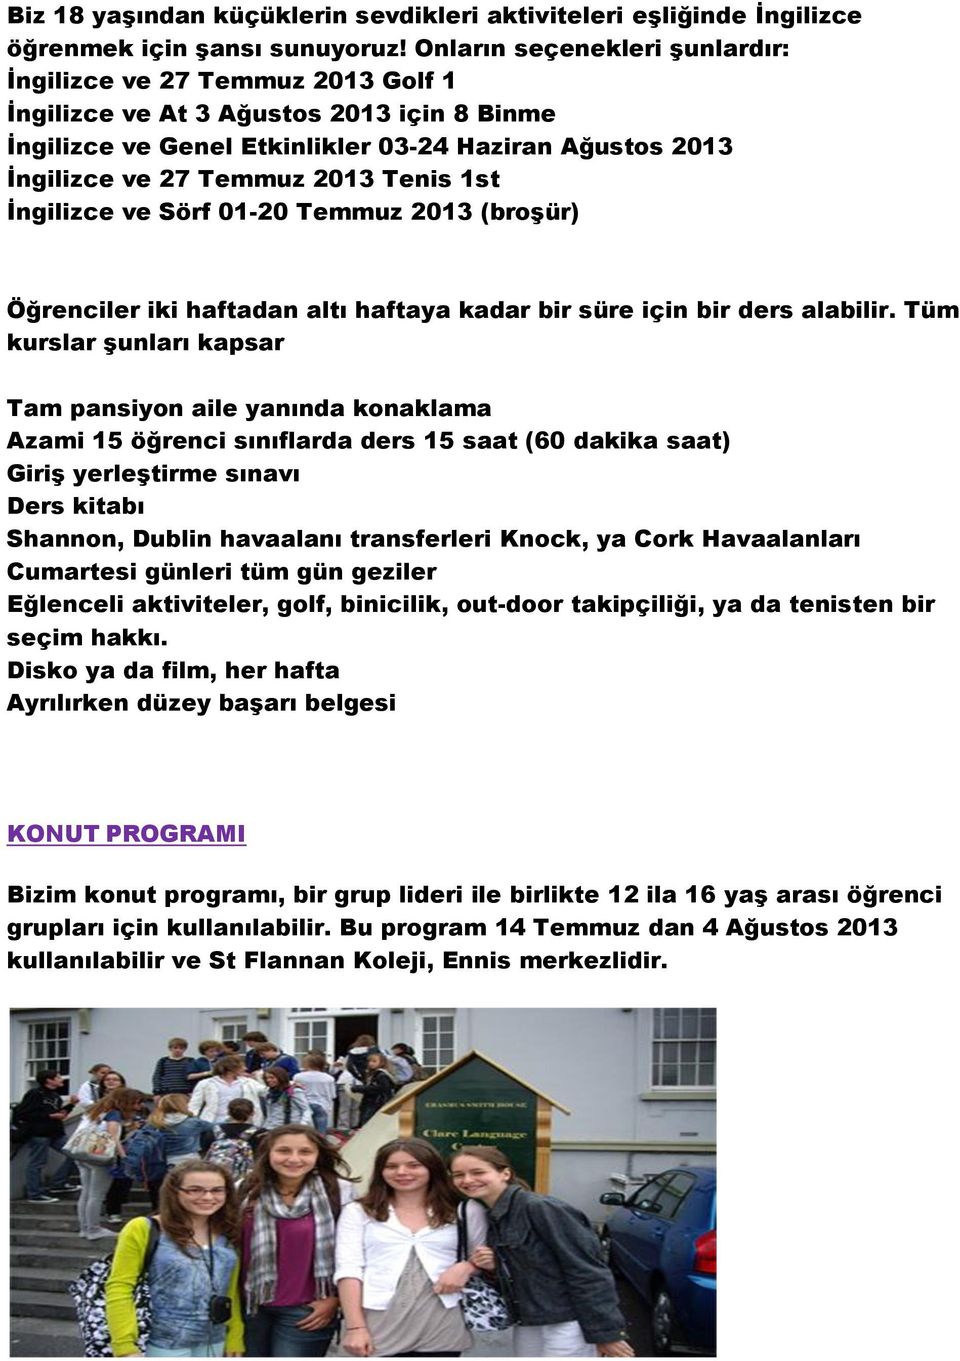 Tenis 1st İngilizce ve Sörf 01-20 Temmuz 2013 (broşür) Öğrenciler iki haftadan altı haftaya kadar bir süre için bir ders alabilir.